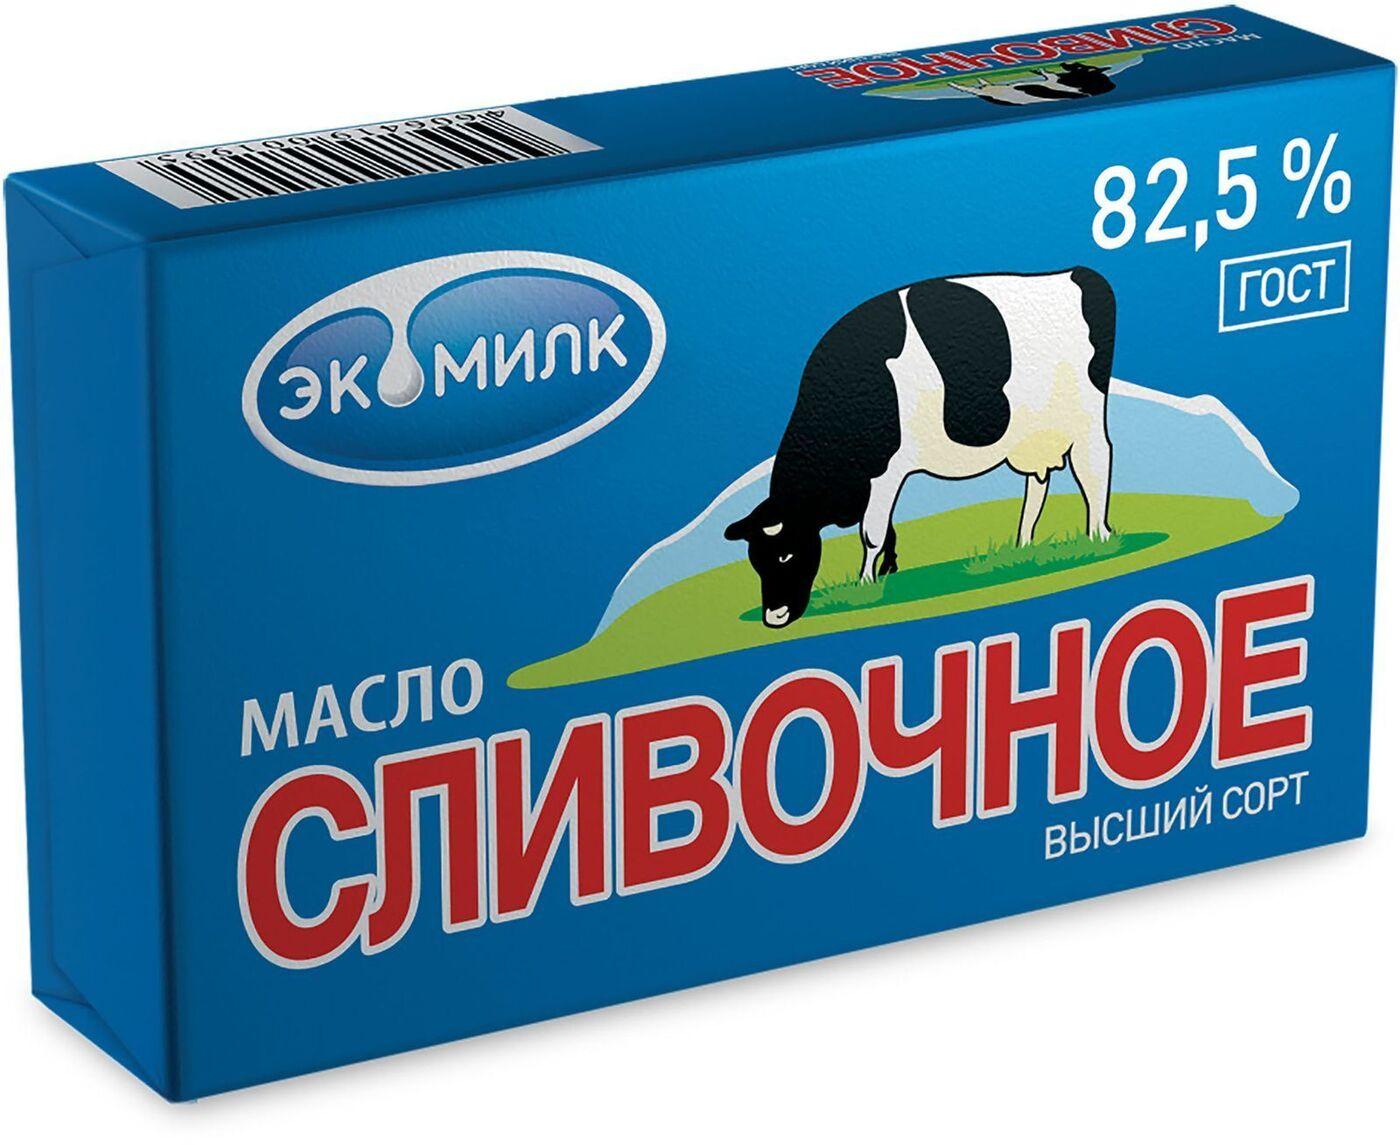 Масло ЭкоМилк Традиционное сладко-сливочное несоленое 82,5%, 330 гр., обертка